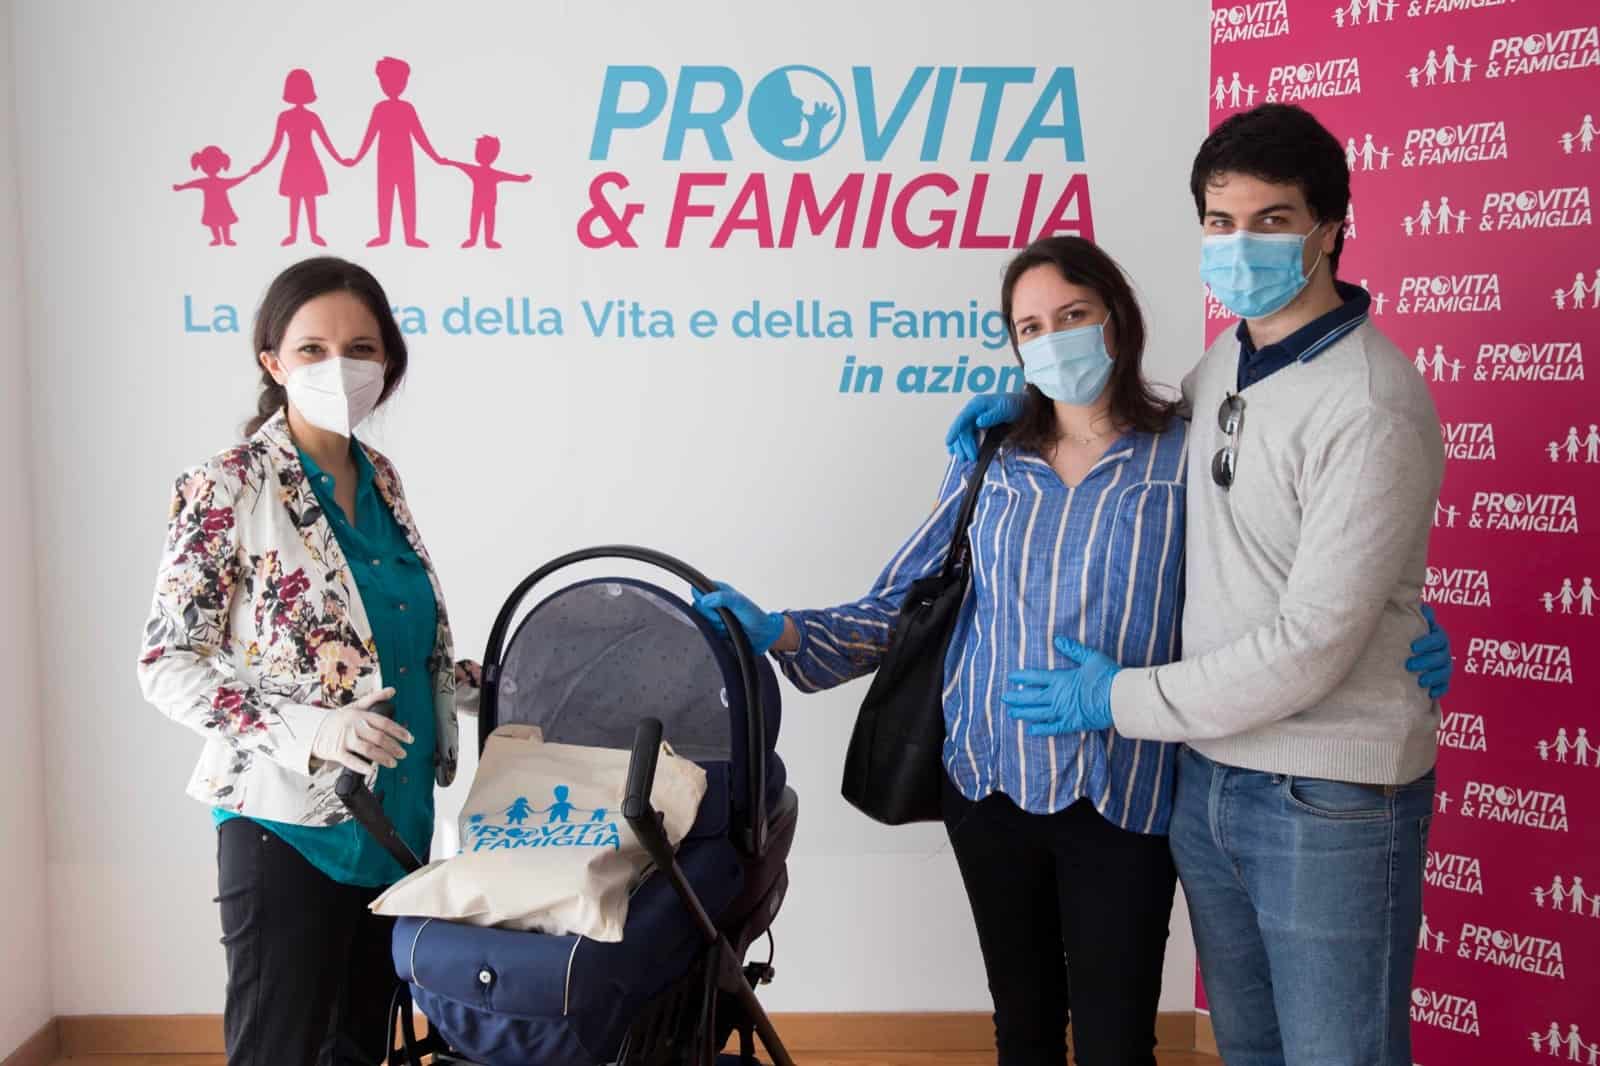 Coronavirus, Pro Vita & Famiglia solidale: torna un "Dono per la Vita", aiuti alle mamme in difficoltà 1